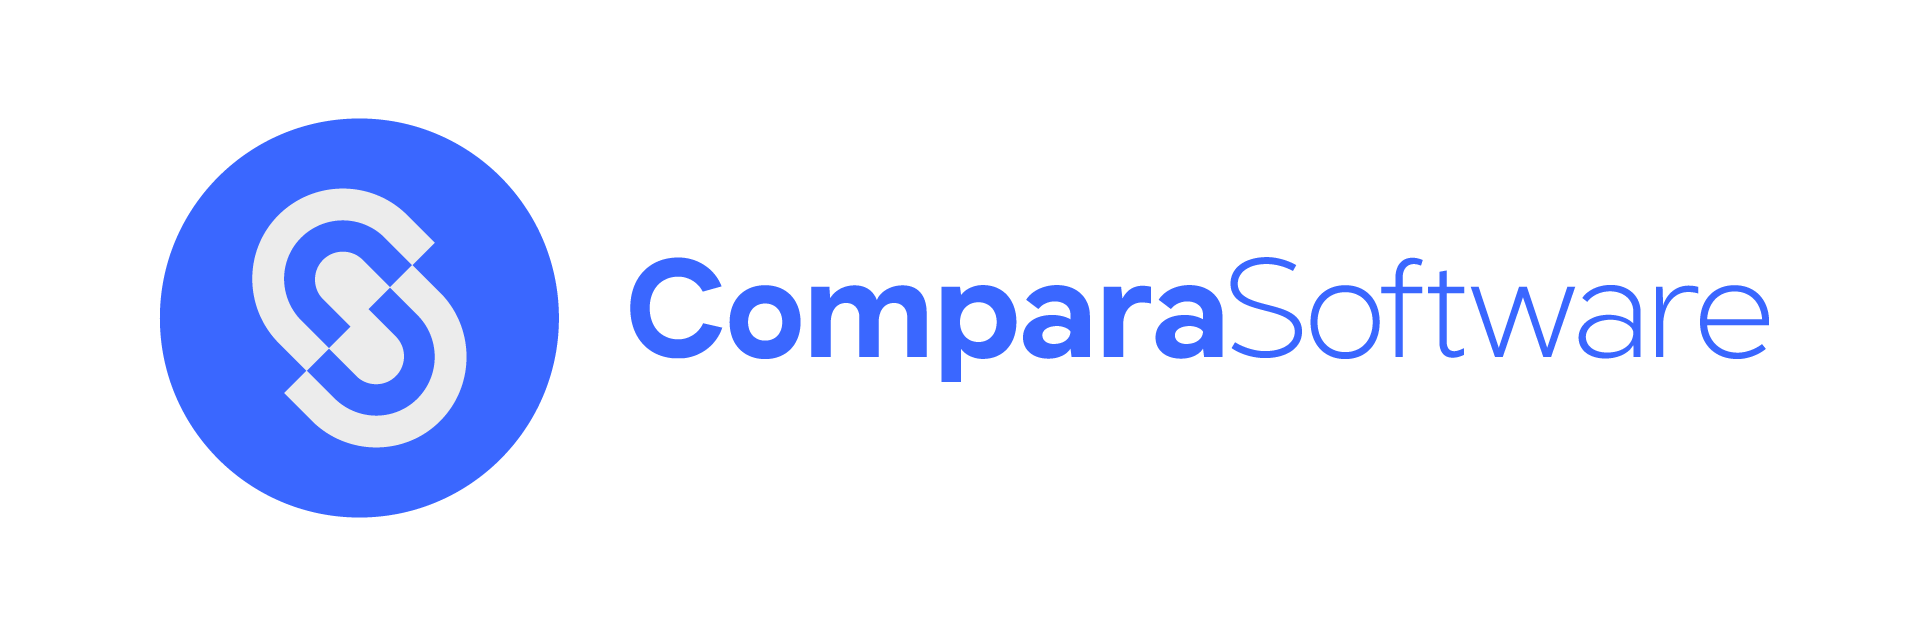 Marca-ComparaSoftware-01-1